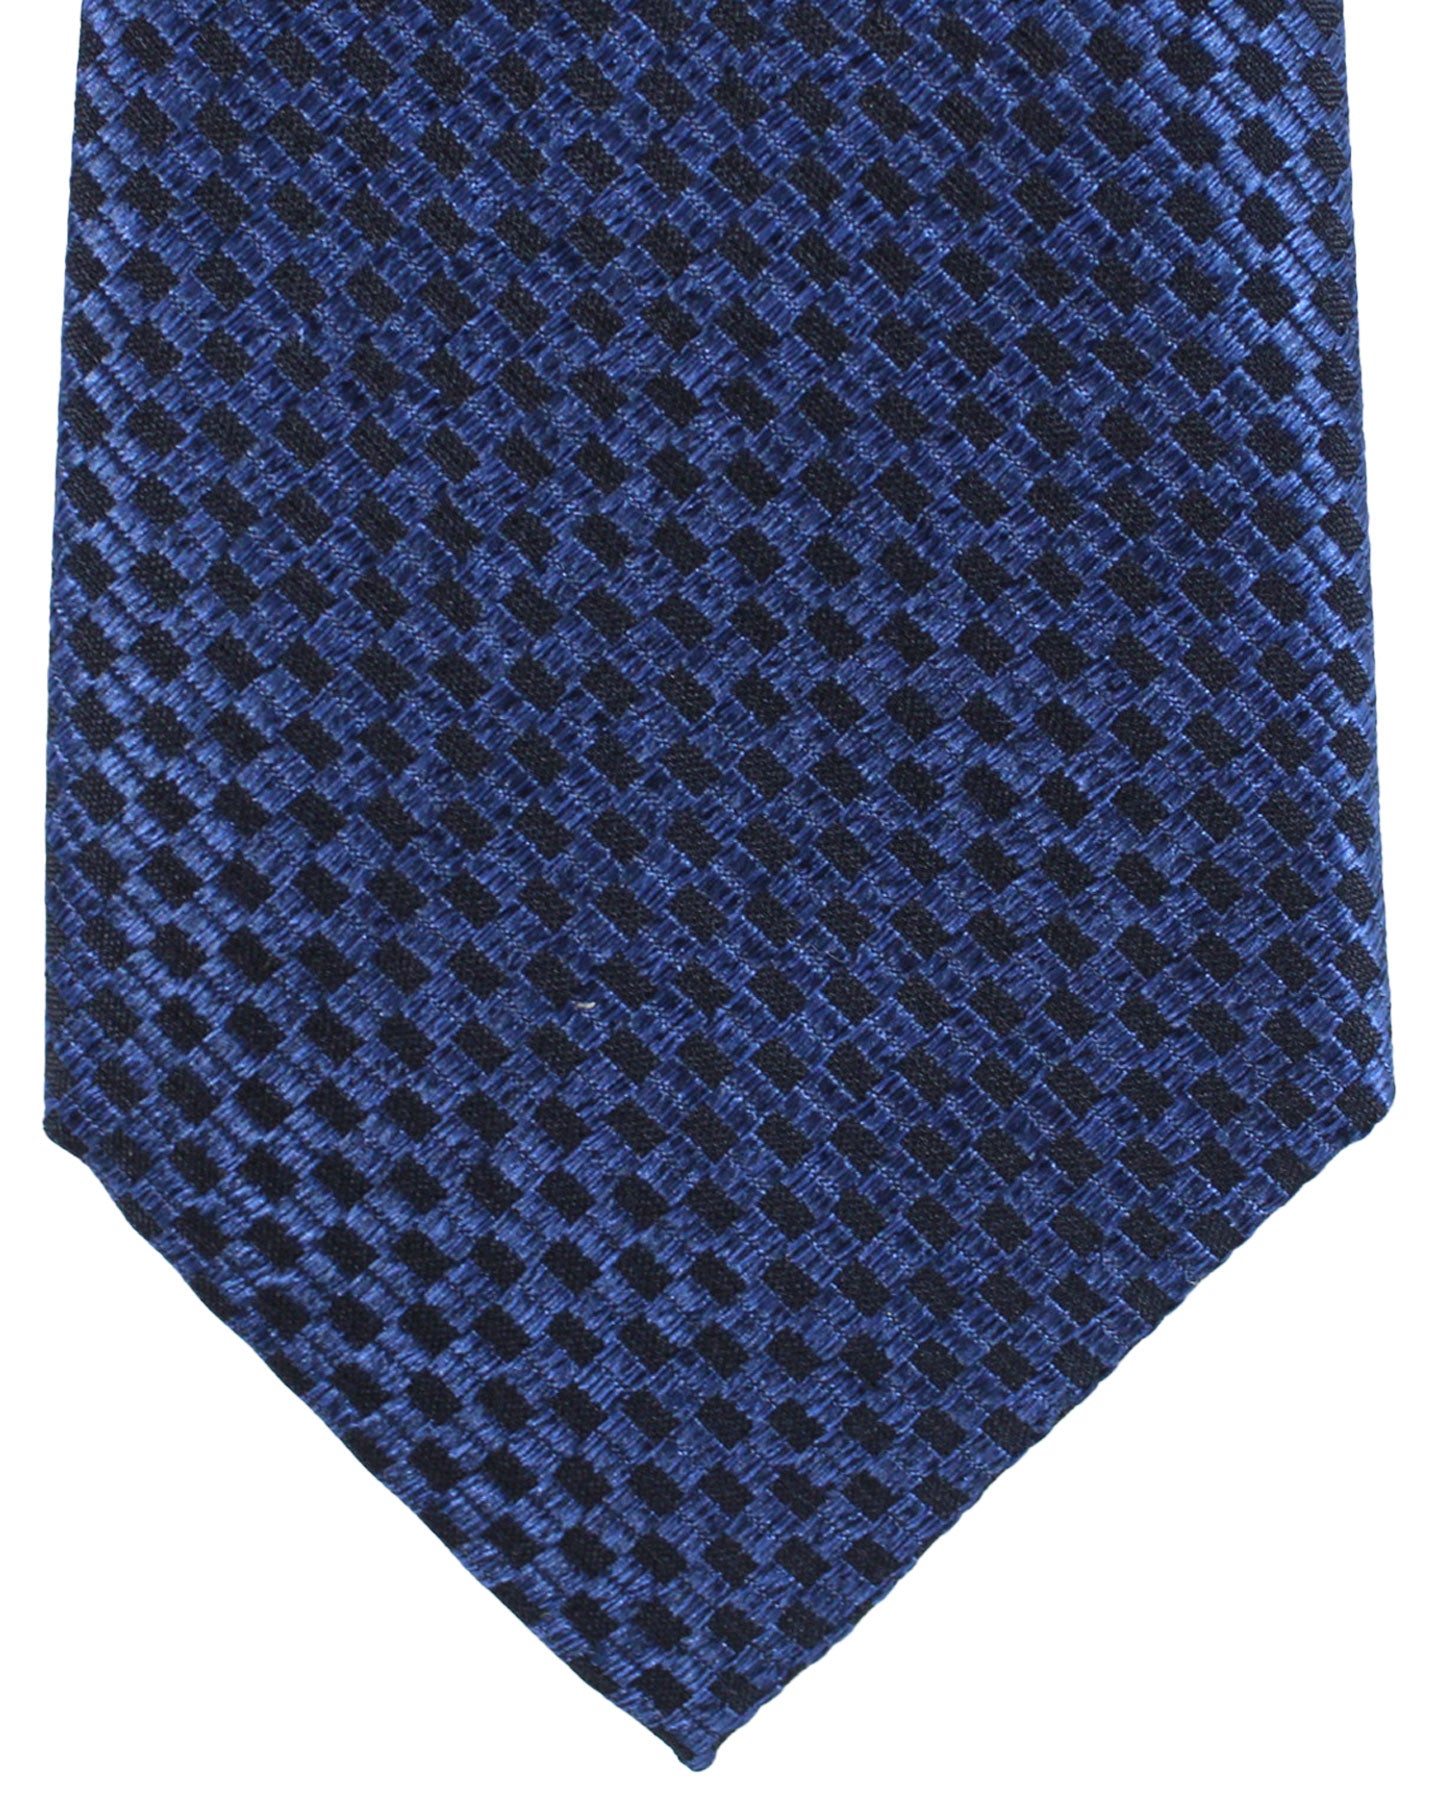 Canali Silk Tie Black Dark Blue Geometric Pattern